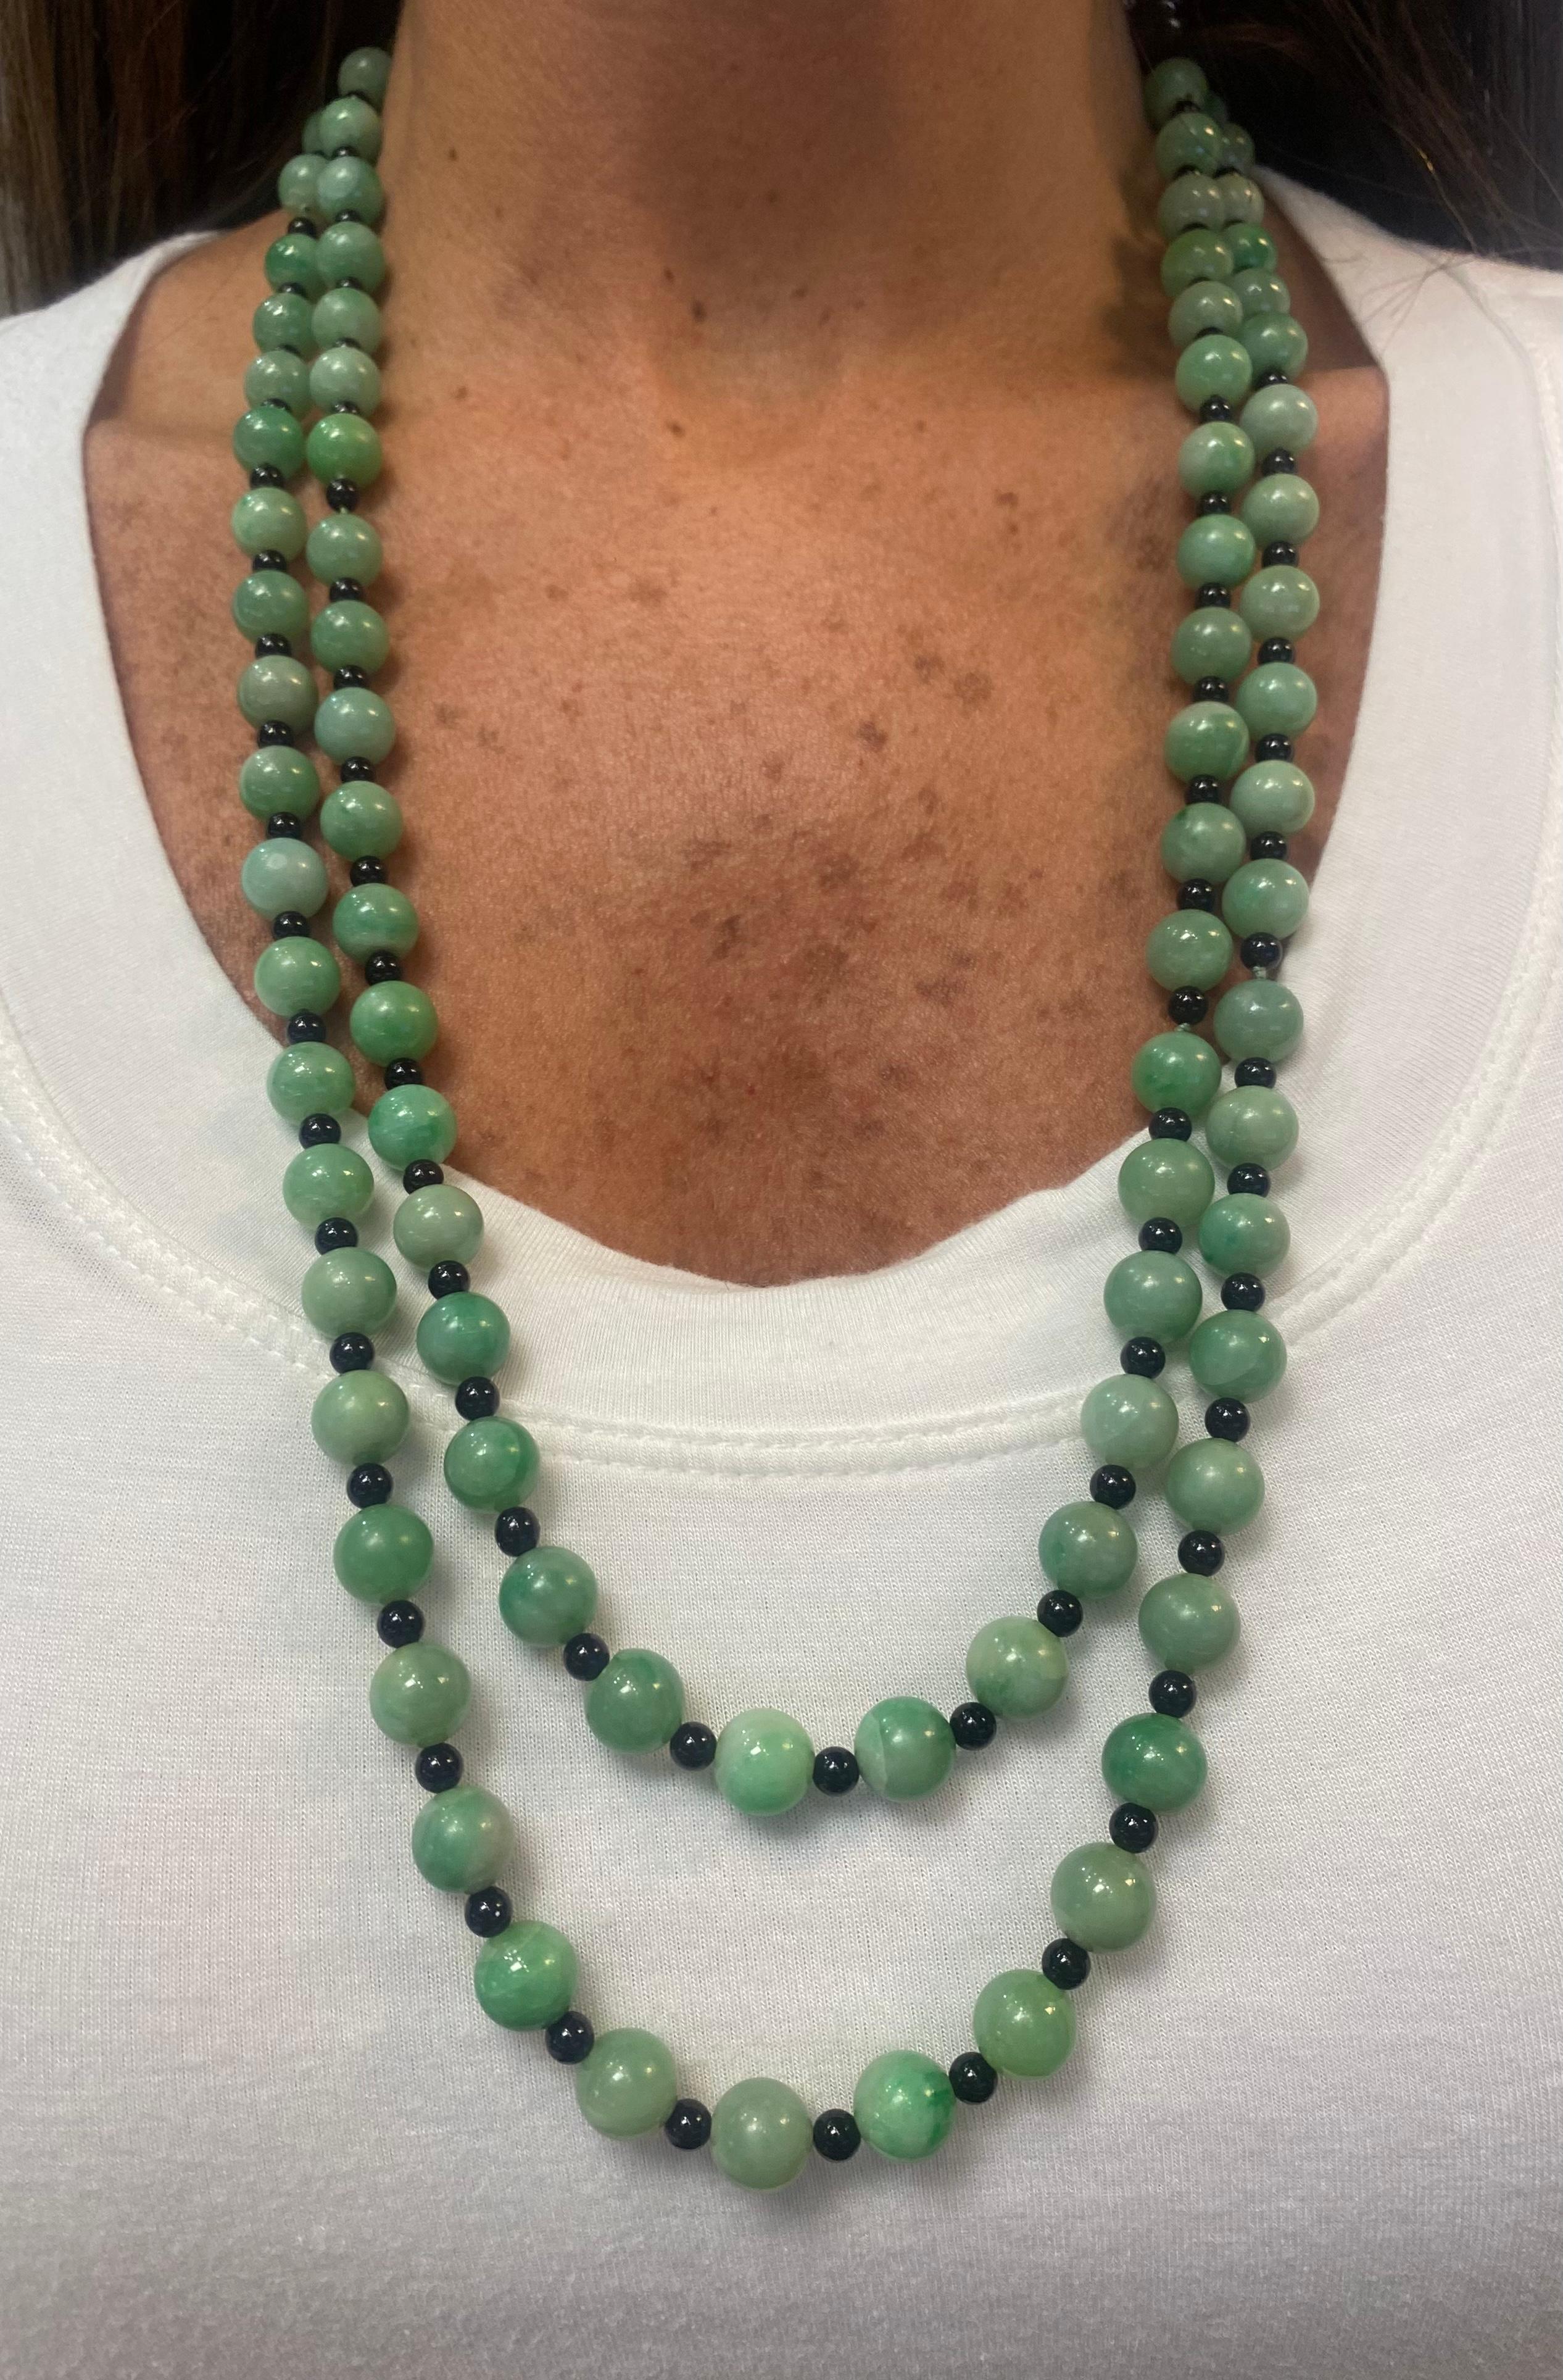 Collier de perles de jade et d'onyx à deux brins

Collier composé d'un fermoir en or blanc 14 carats, serti de 16 diamants ronds et d'une pierre de jade sculptée, reliant deux rangs de perles de jade et d'onyx alternées.

Longueur : 55